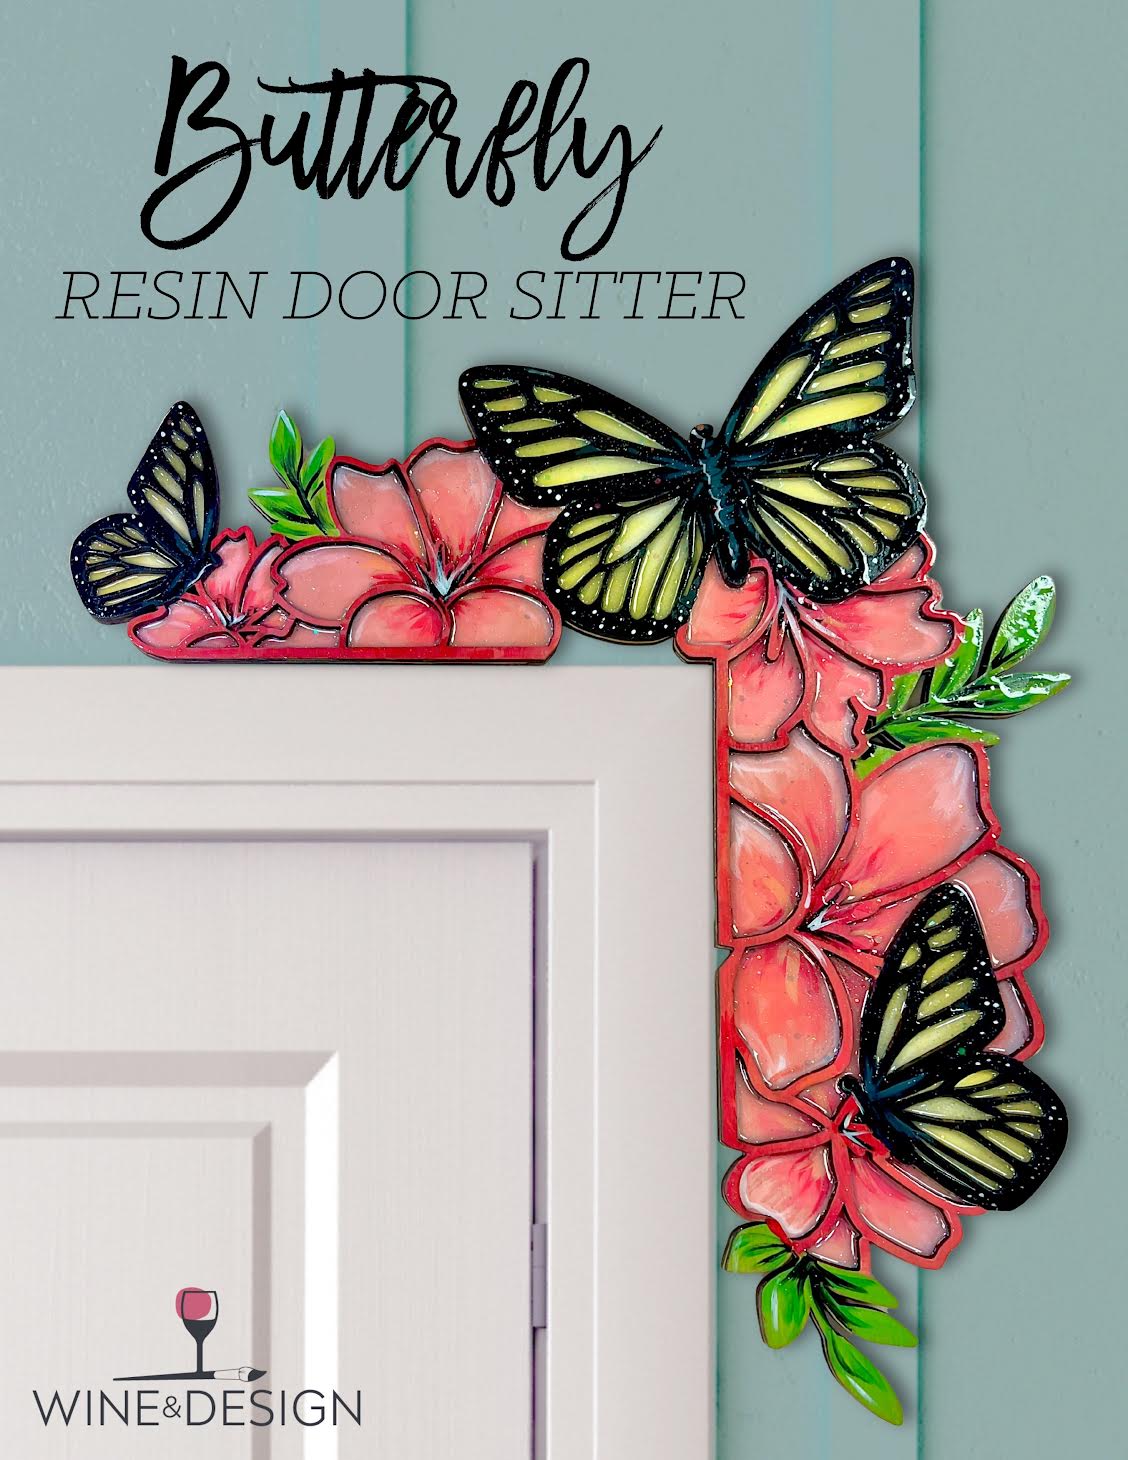 3 SEATS LEFT! Butterfly Resin Door Sitter 